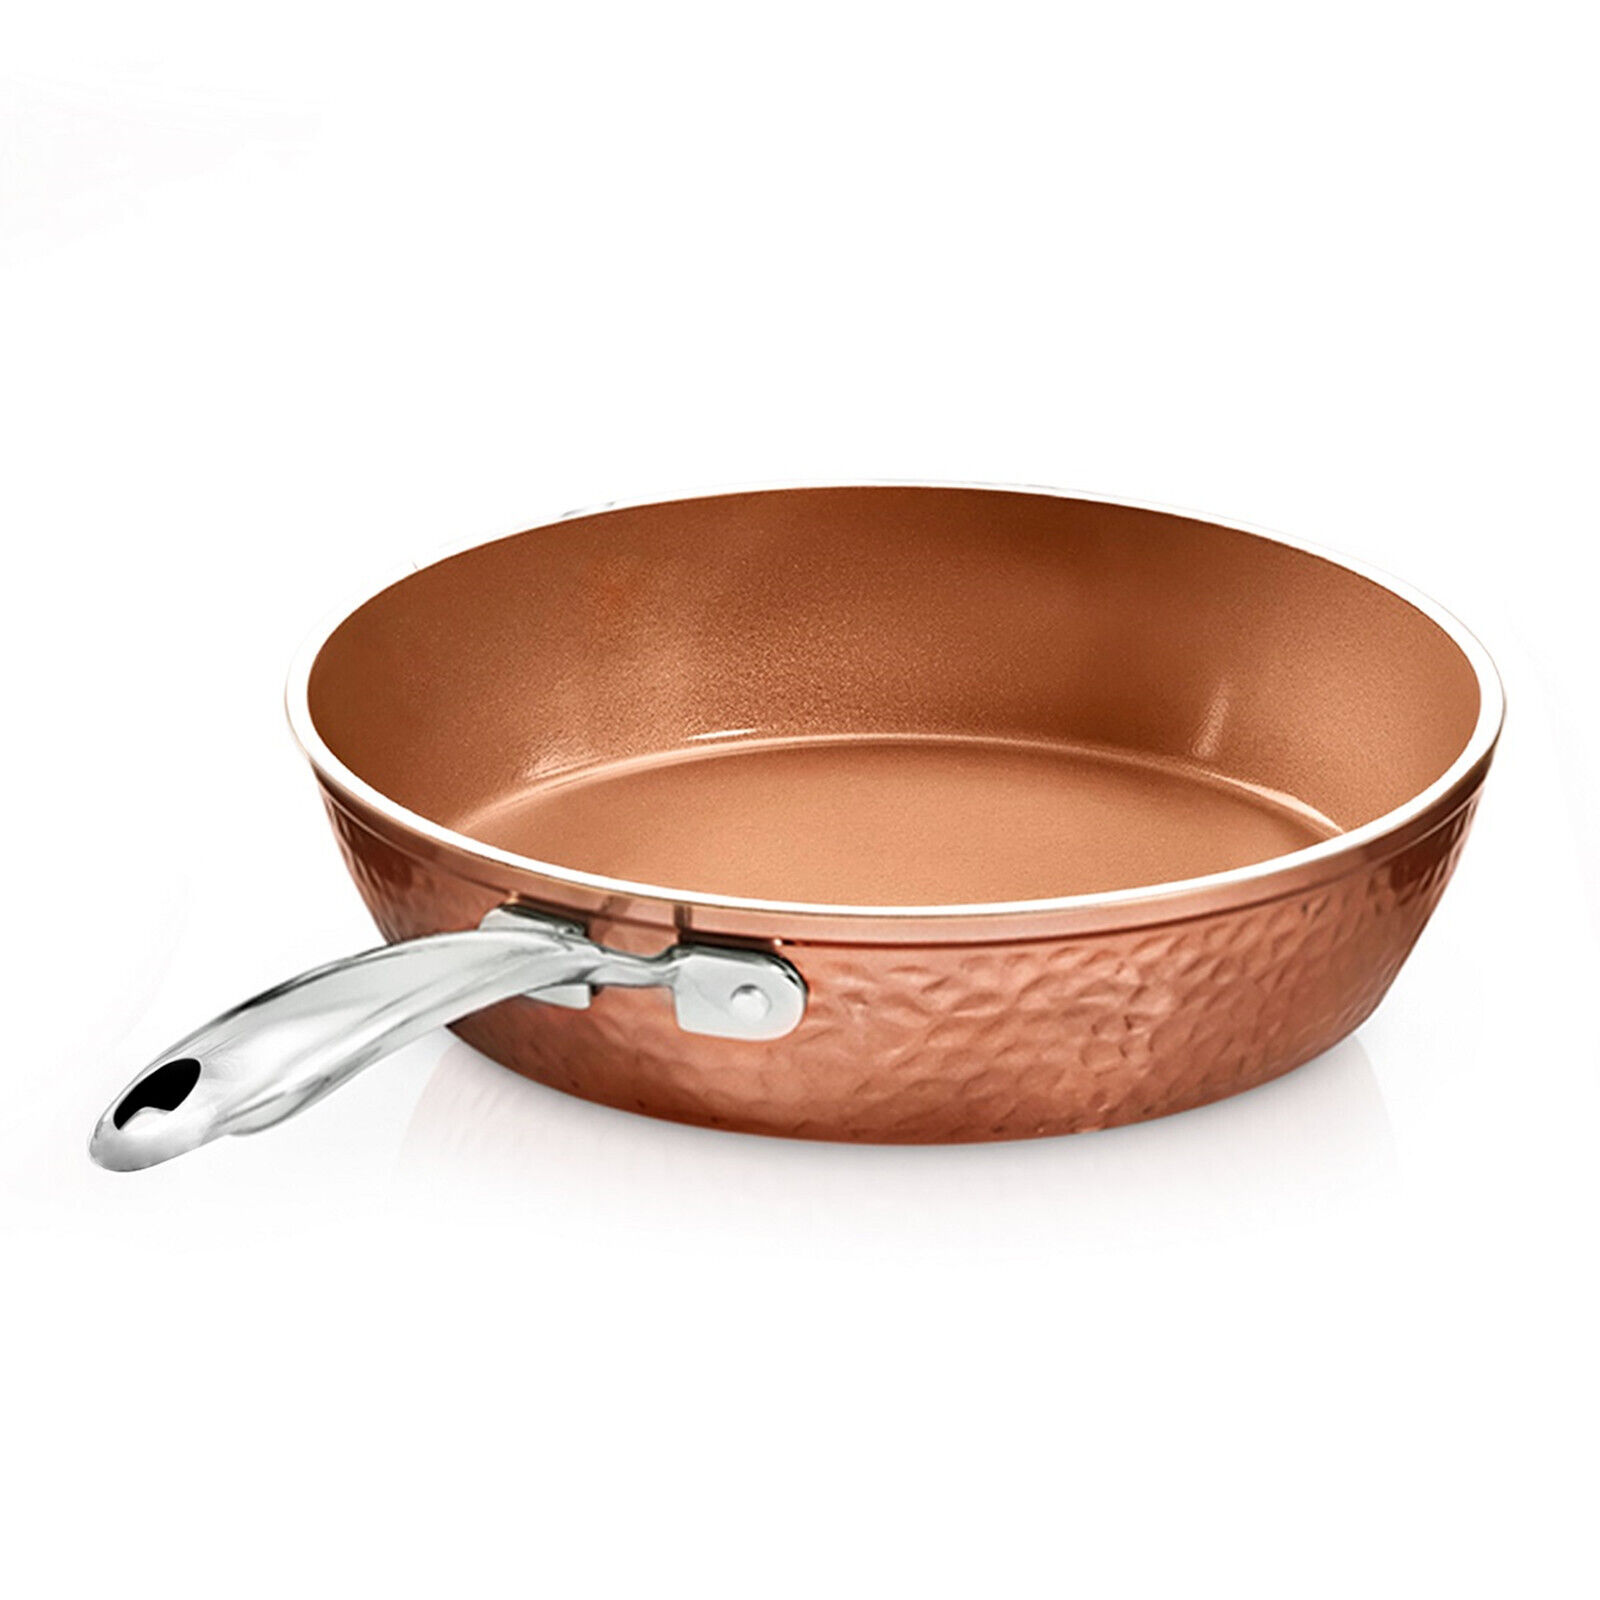 Hammered Nonstick Frying Pan Ceramic Skillet ,Dishwasher Safe Copper 12 inch